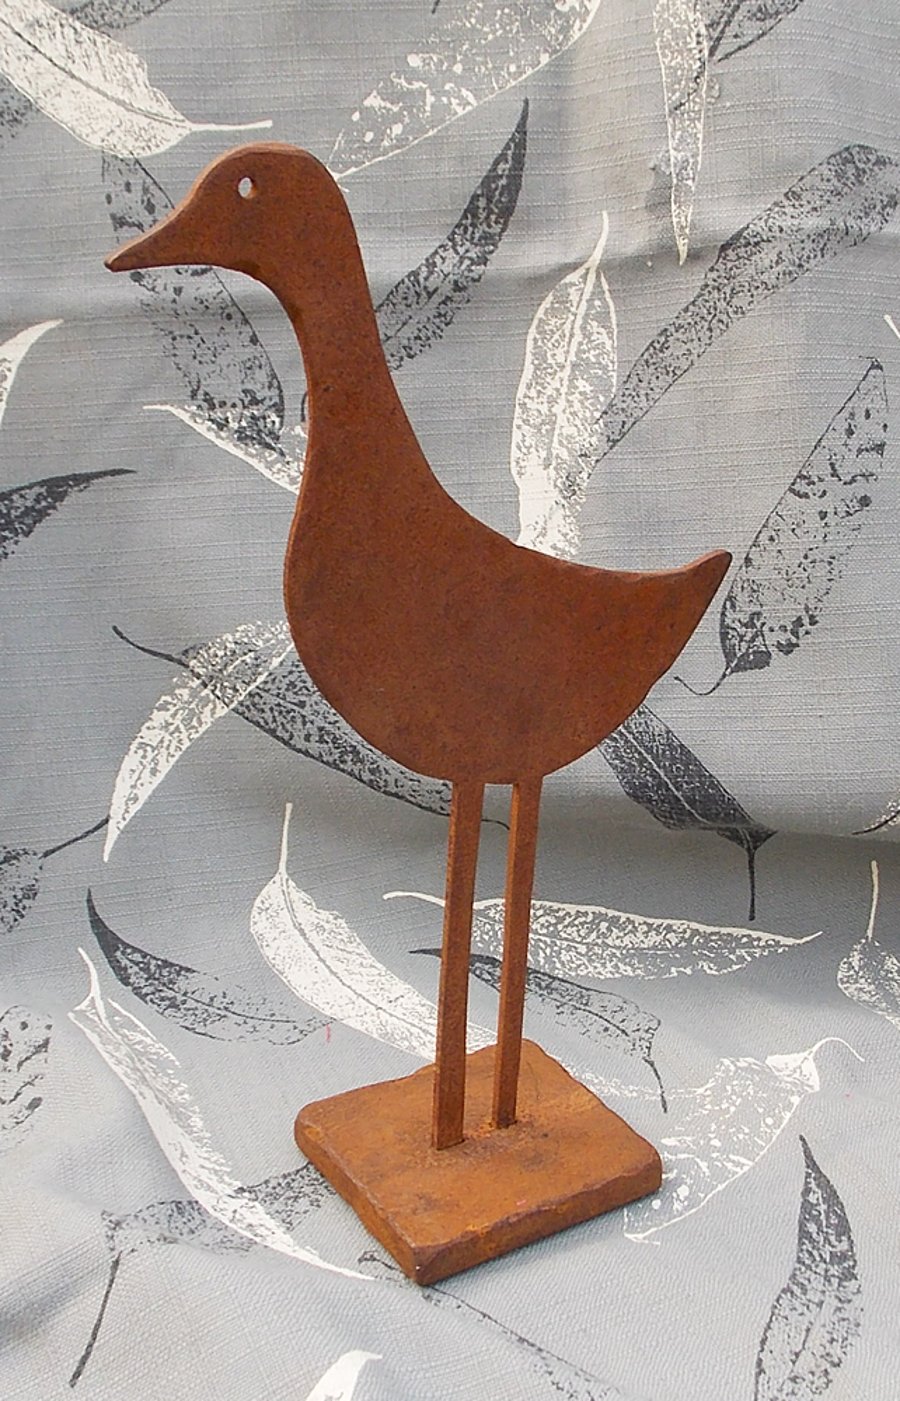 Duck, rustic table top sculpture